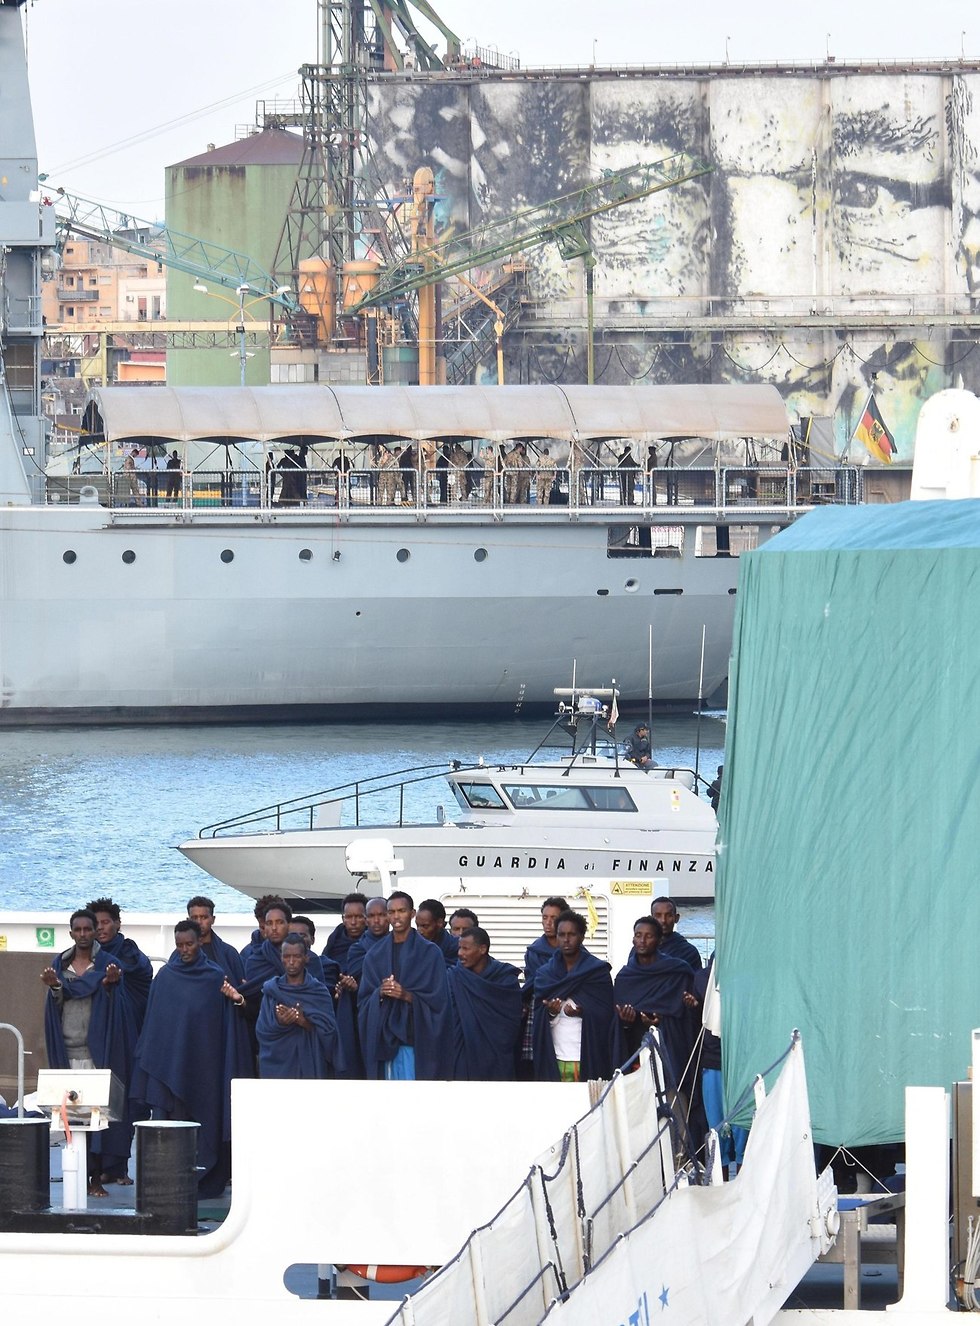 מהגרים אפריקנים ש איטליה מסרבת לקלוט בספינה בנמל קטניה סיציליה (צילום: EPA)